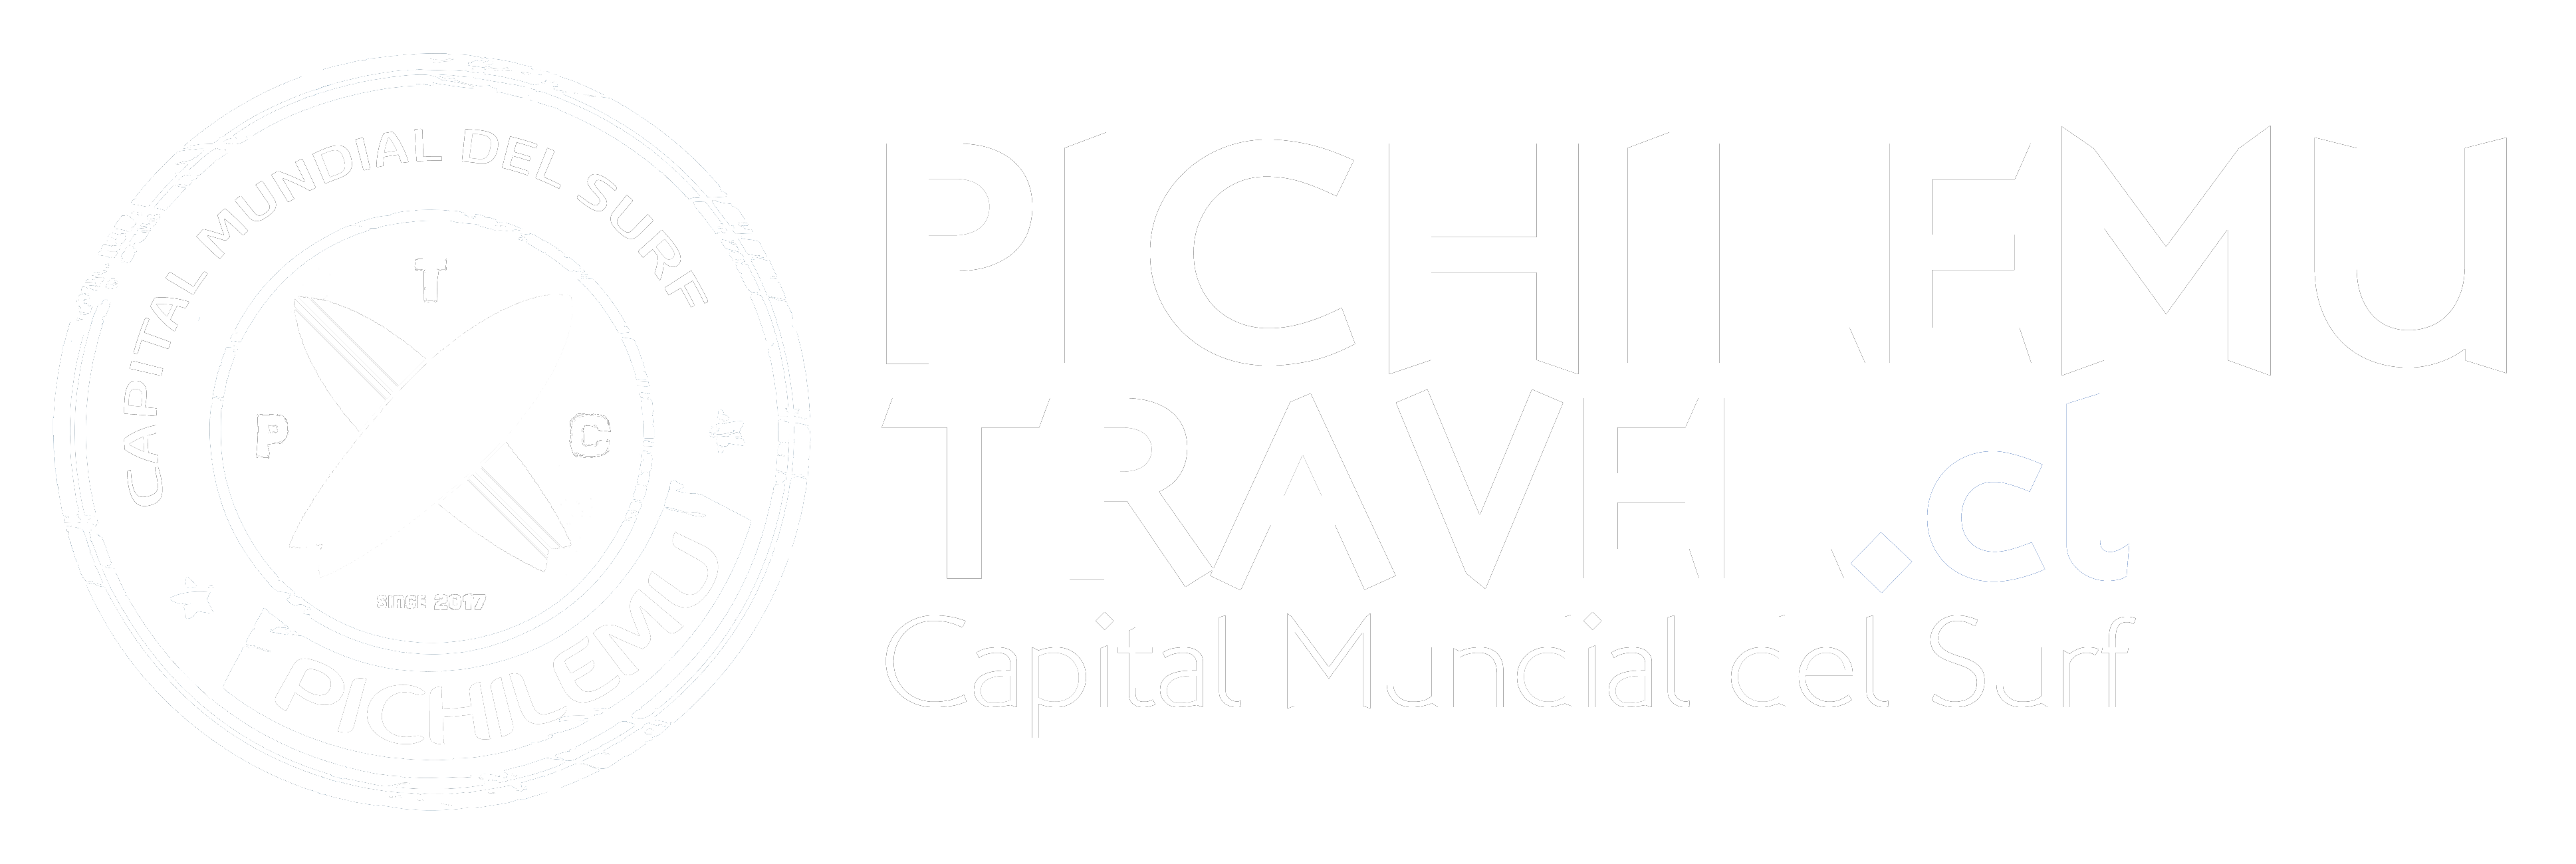 Sitio Turístico PichilemuTravel.cl